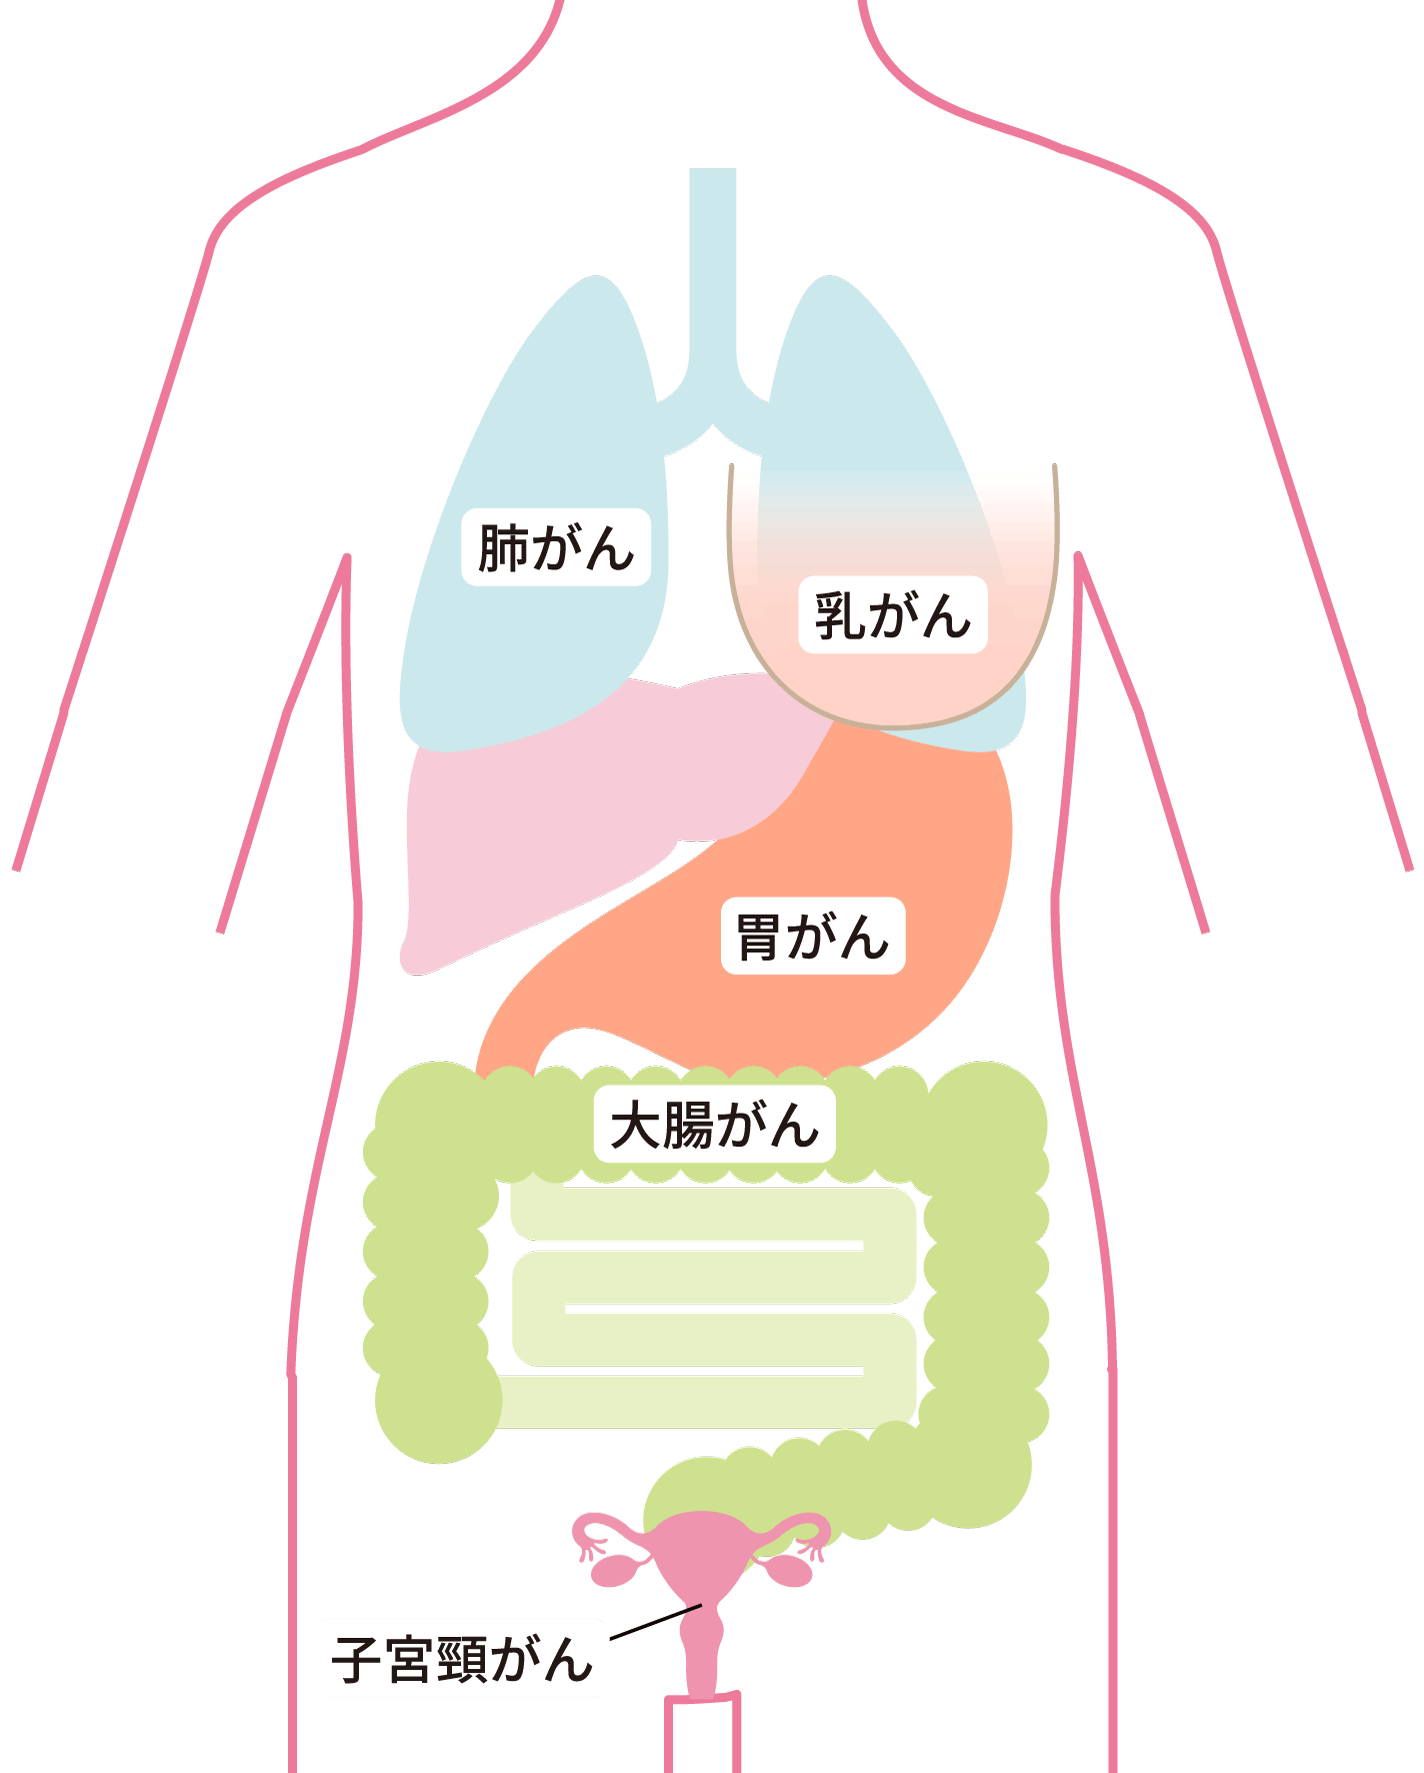 がんの部位を記した人体図